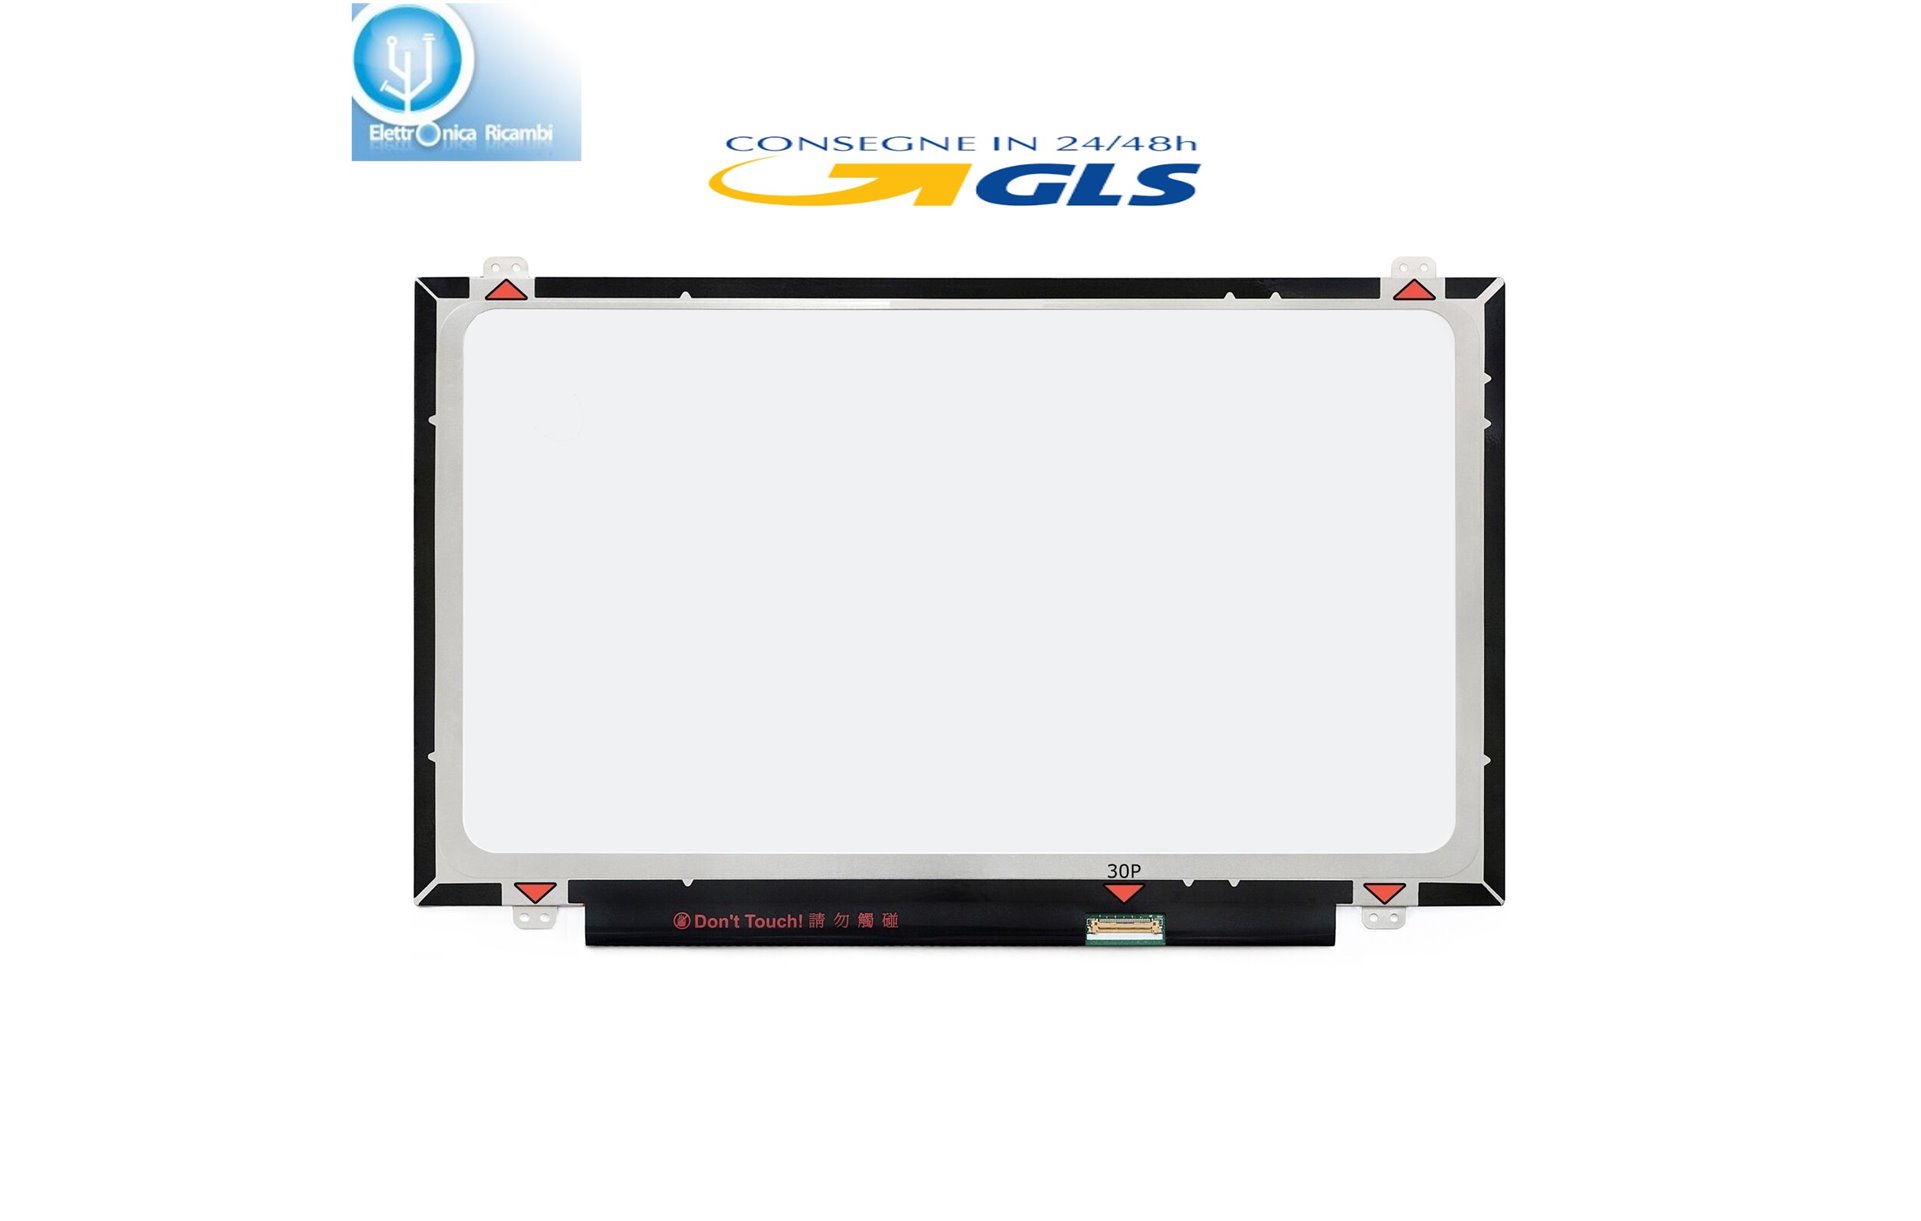 Display LCD Schermo HP 245 G4 14.0 LED SLIM 30 pin HD (1366x768)